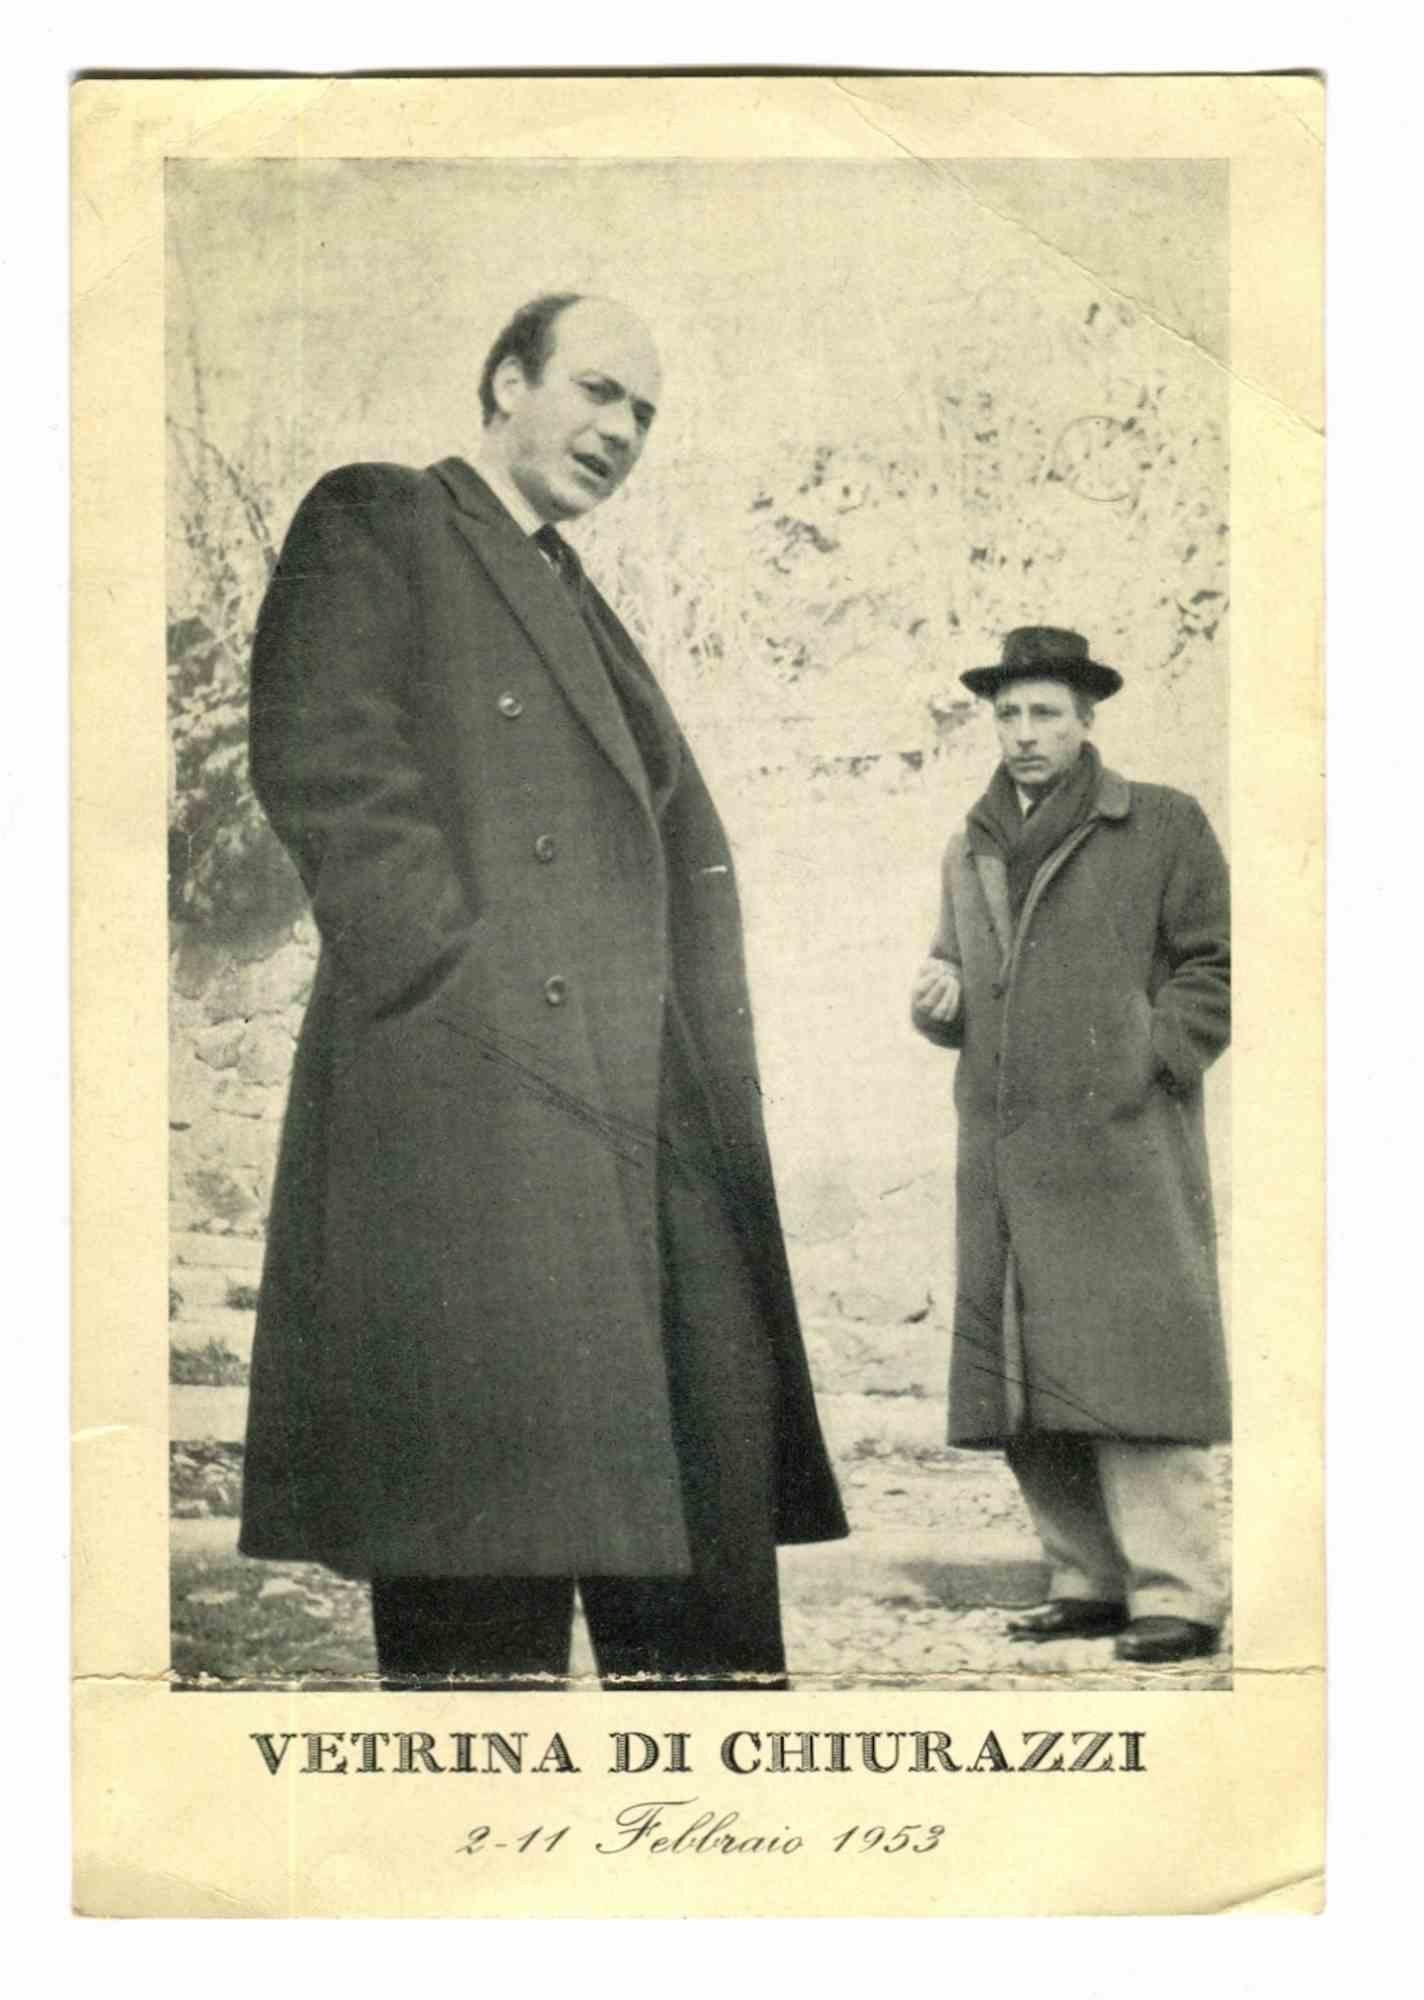 Unknown Portrait Photograph - Omiccioli and Villoresi at Vetrina di Chiurazzi - Vintage Photo - 1953